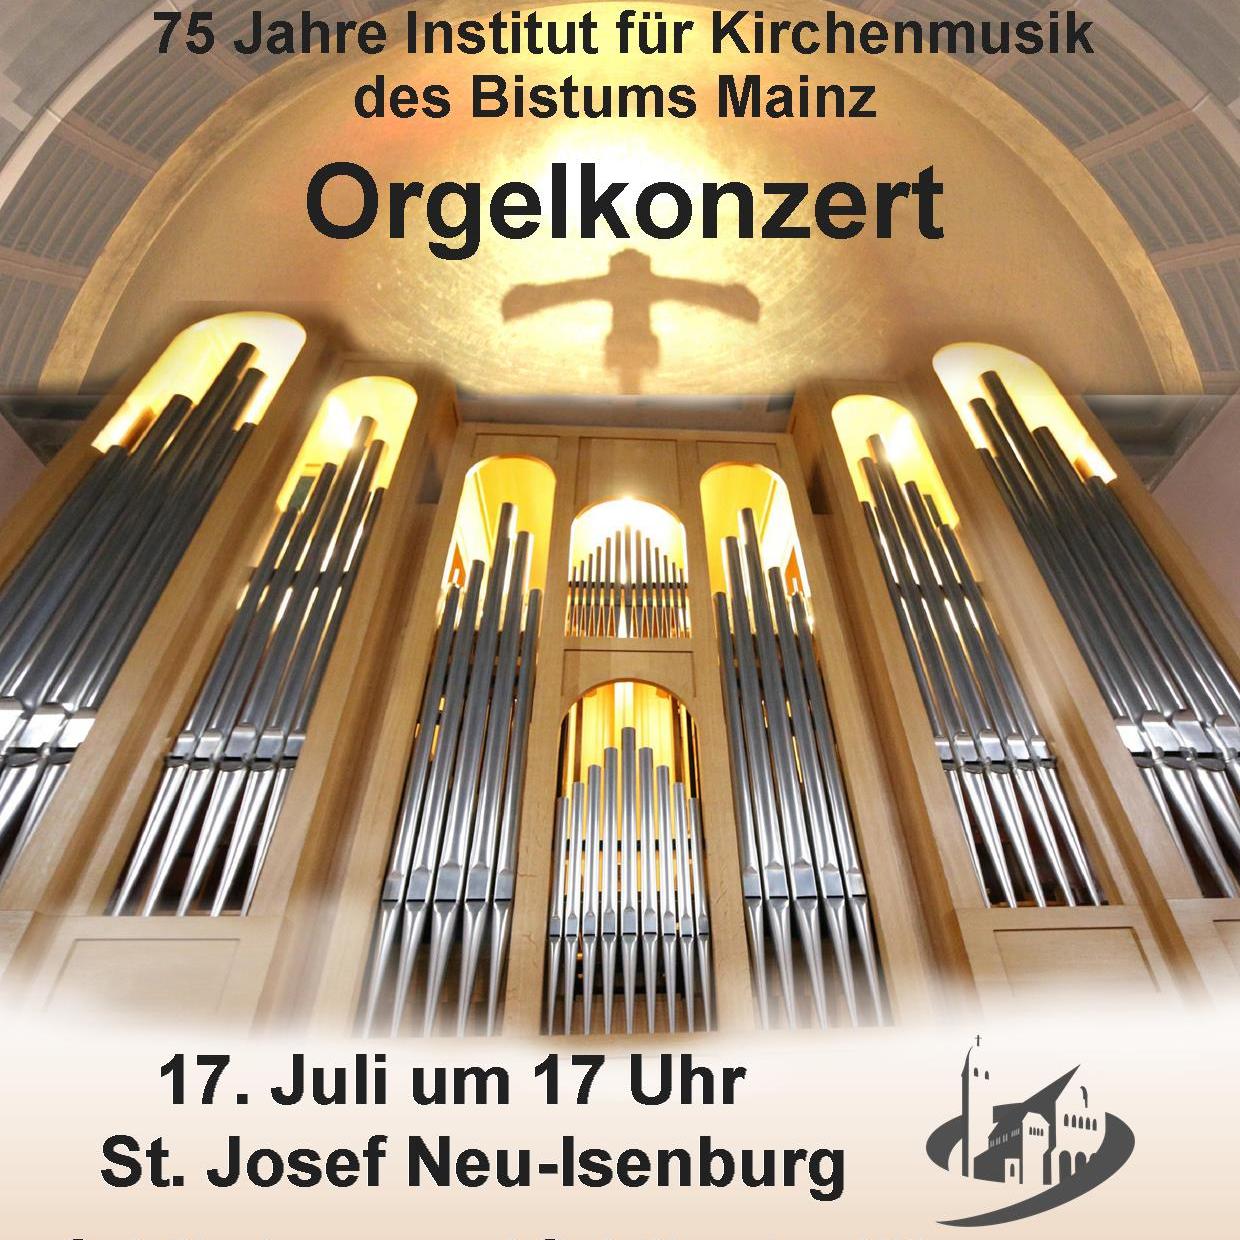 Orgelkonzert 75 Jahre IfK